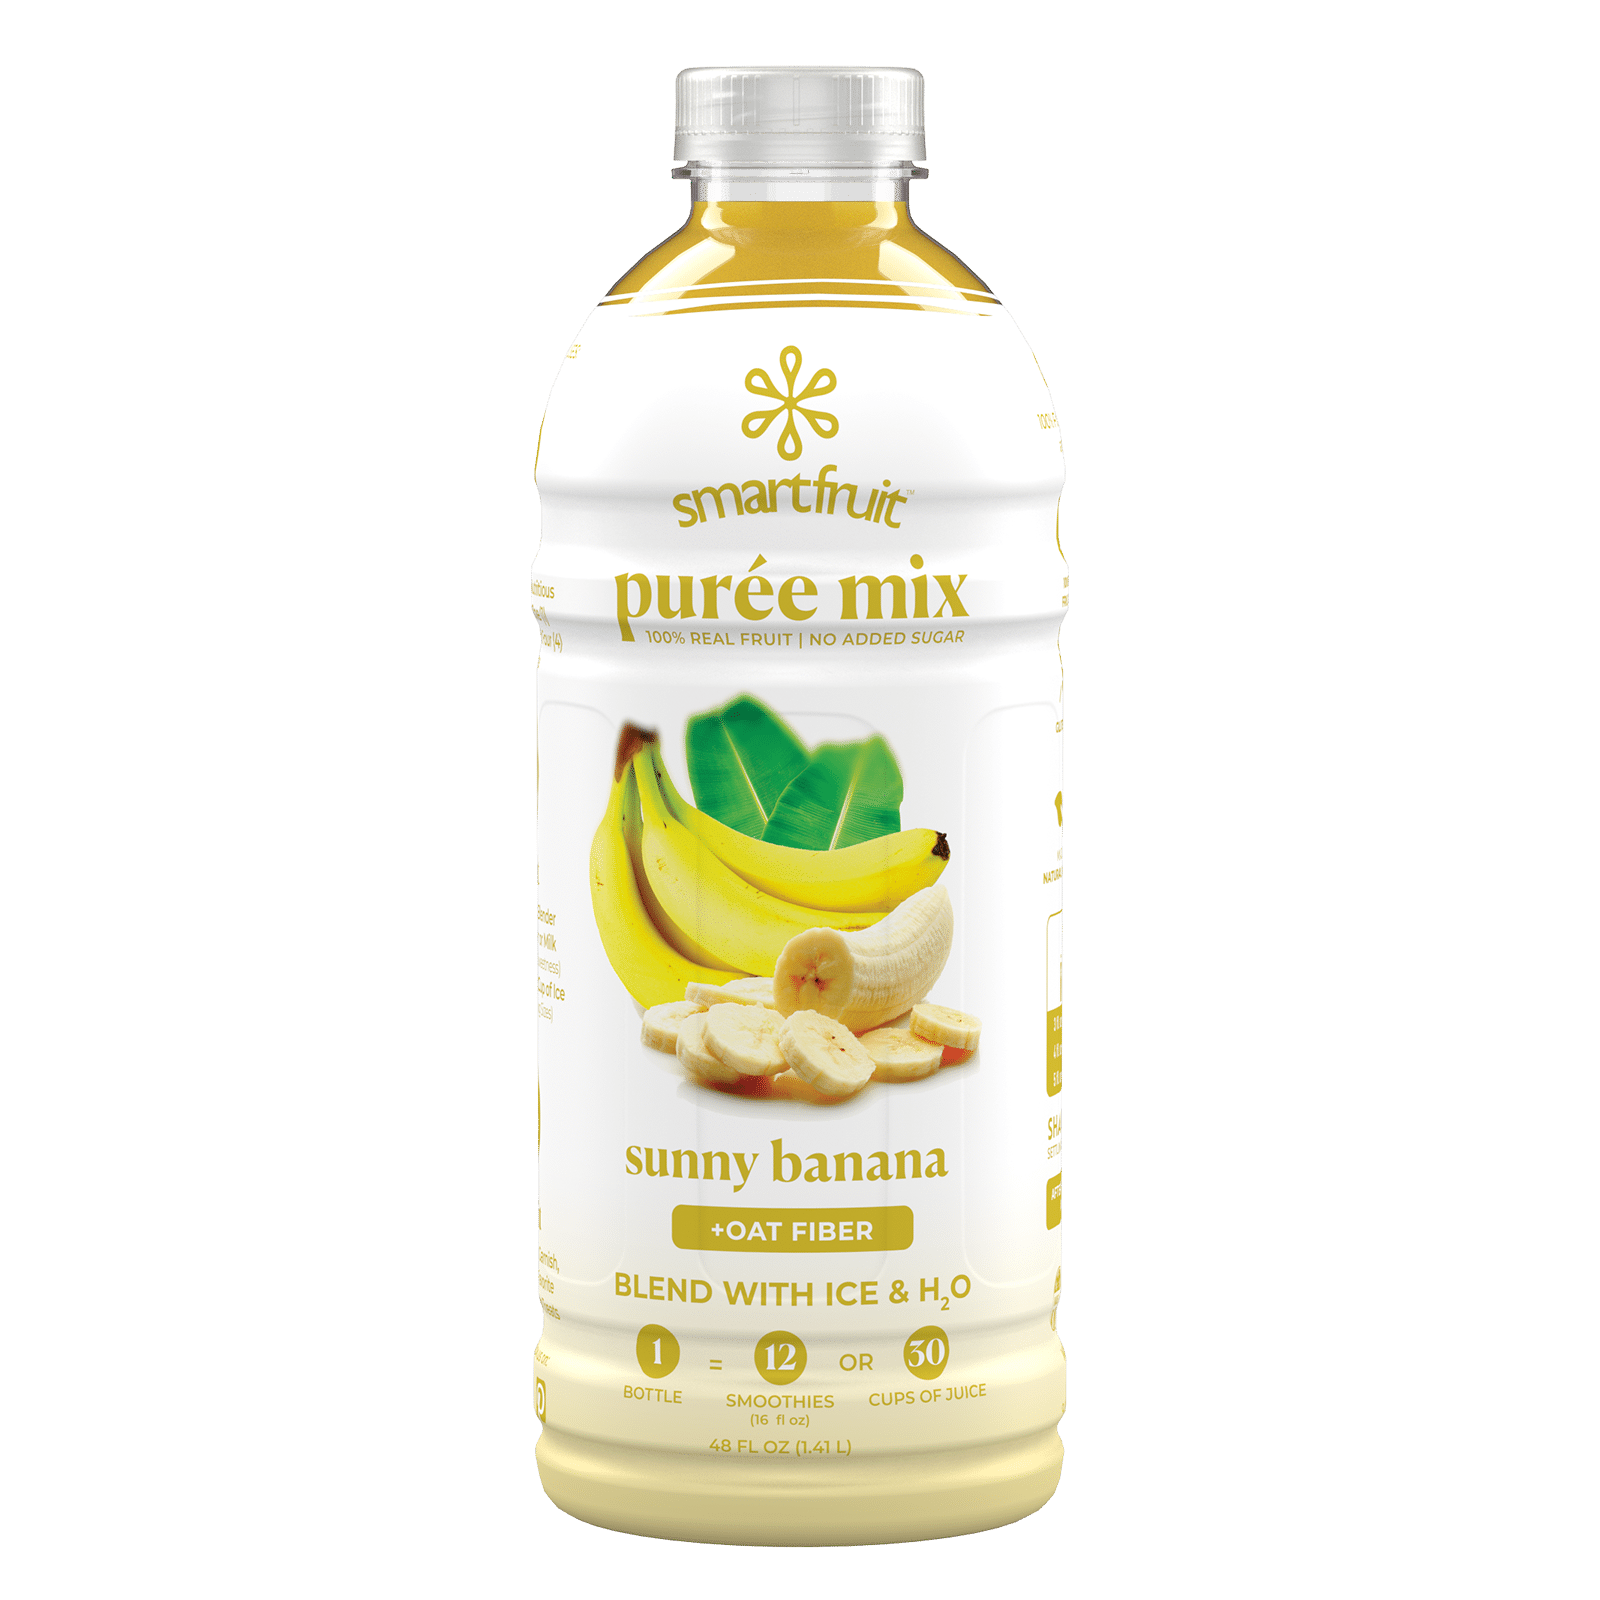 Smartfruit Sunny Banana Puree Mix bottle